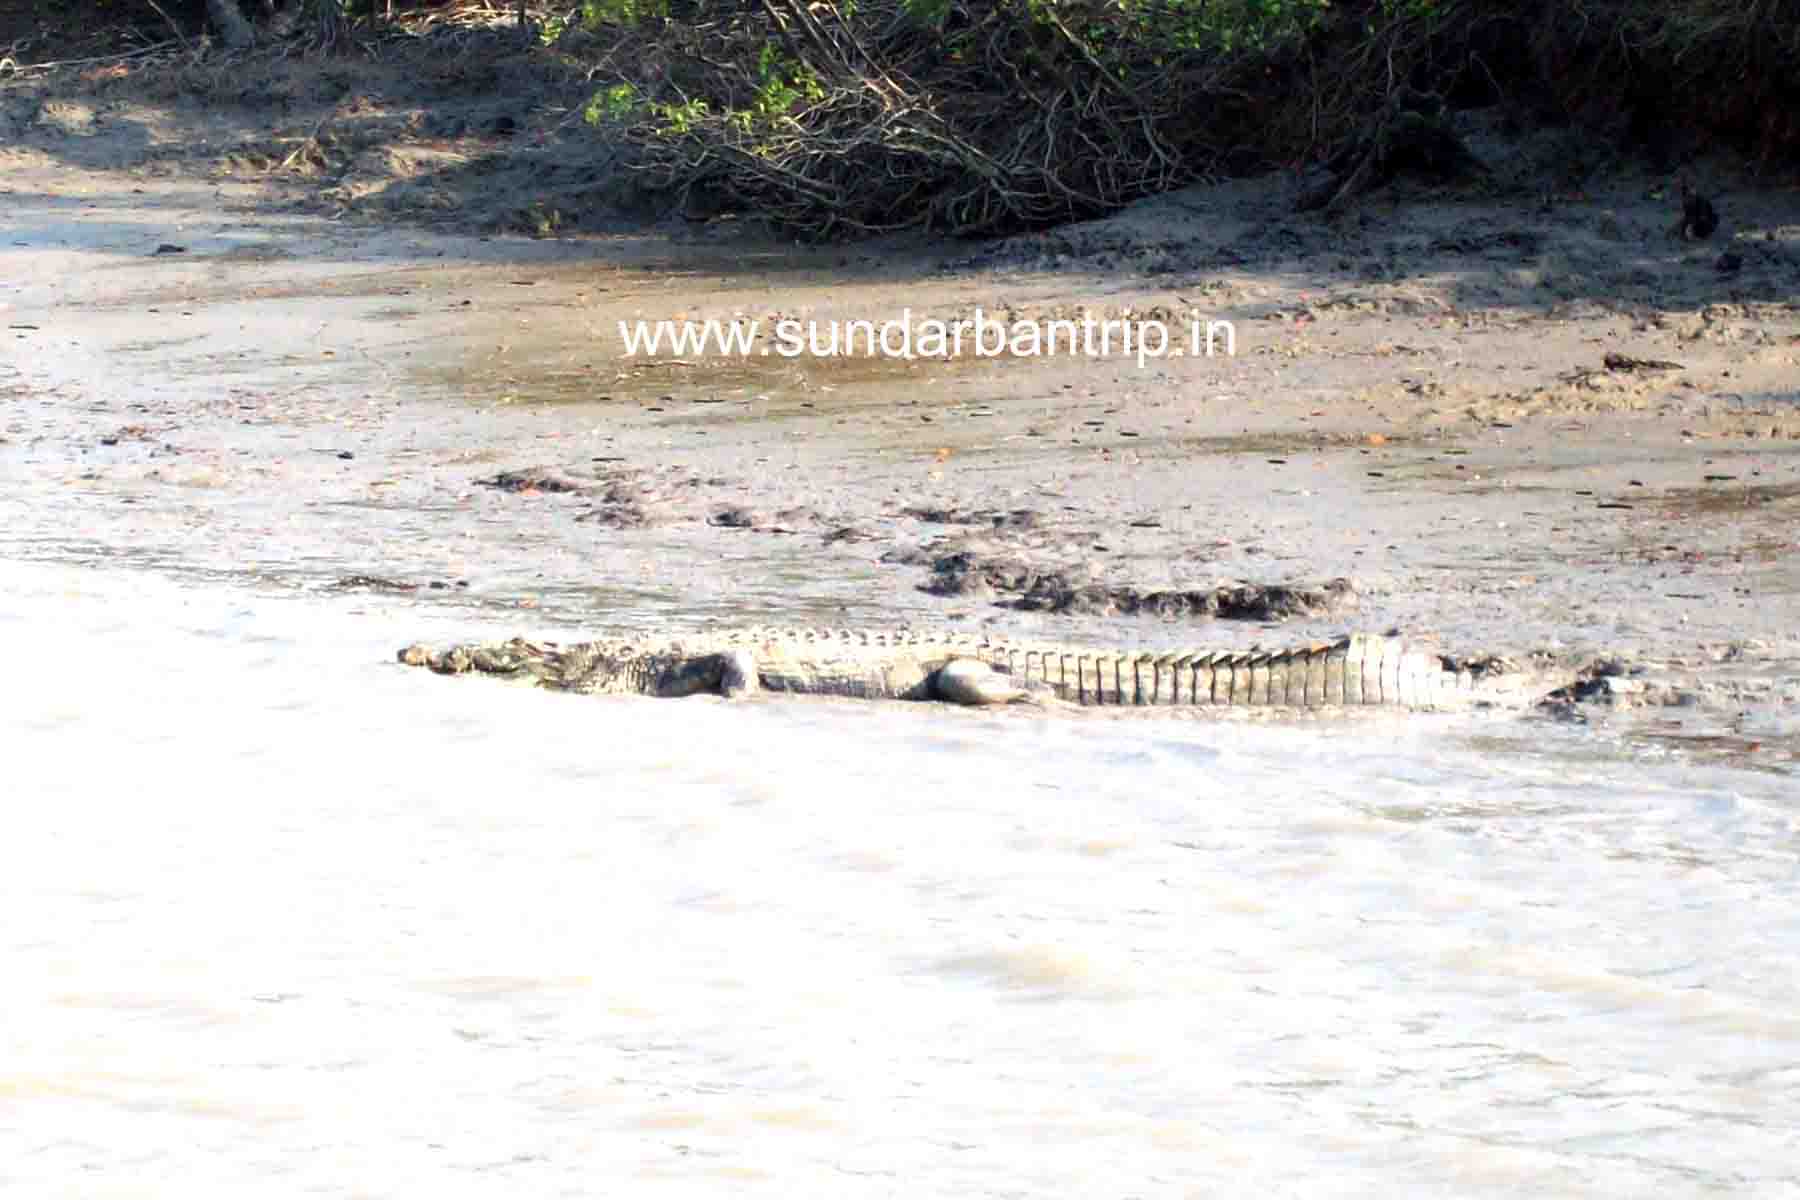 Crocodile Sundarban Trip